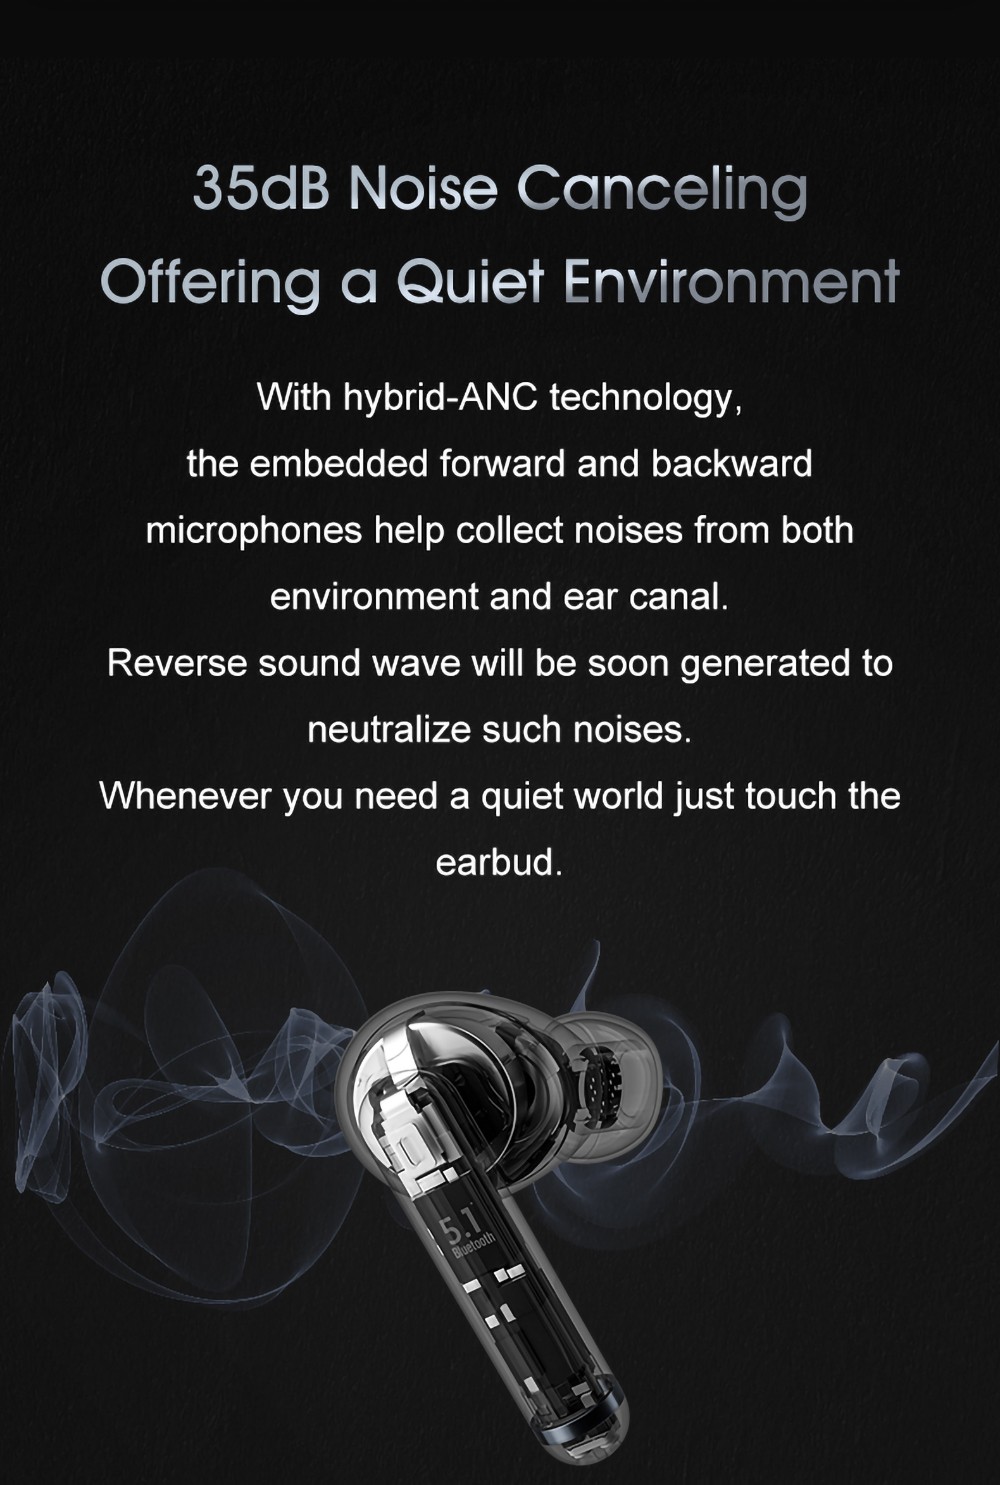 QCY HT03 Bluetooth 5.1 TWS Беспроводные наушники с активным шумоподавлением